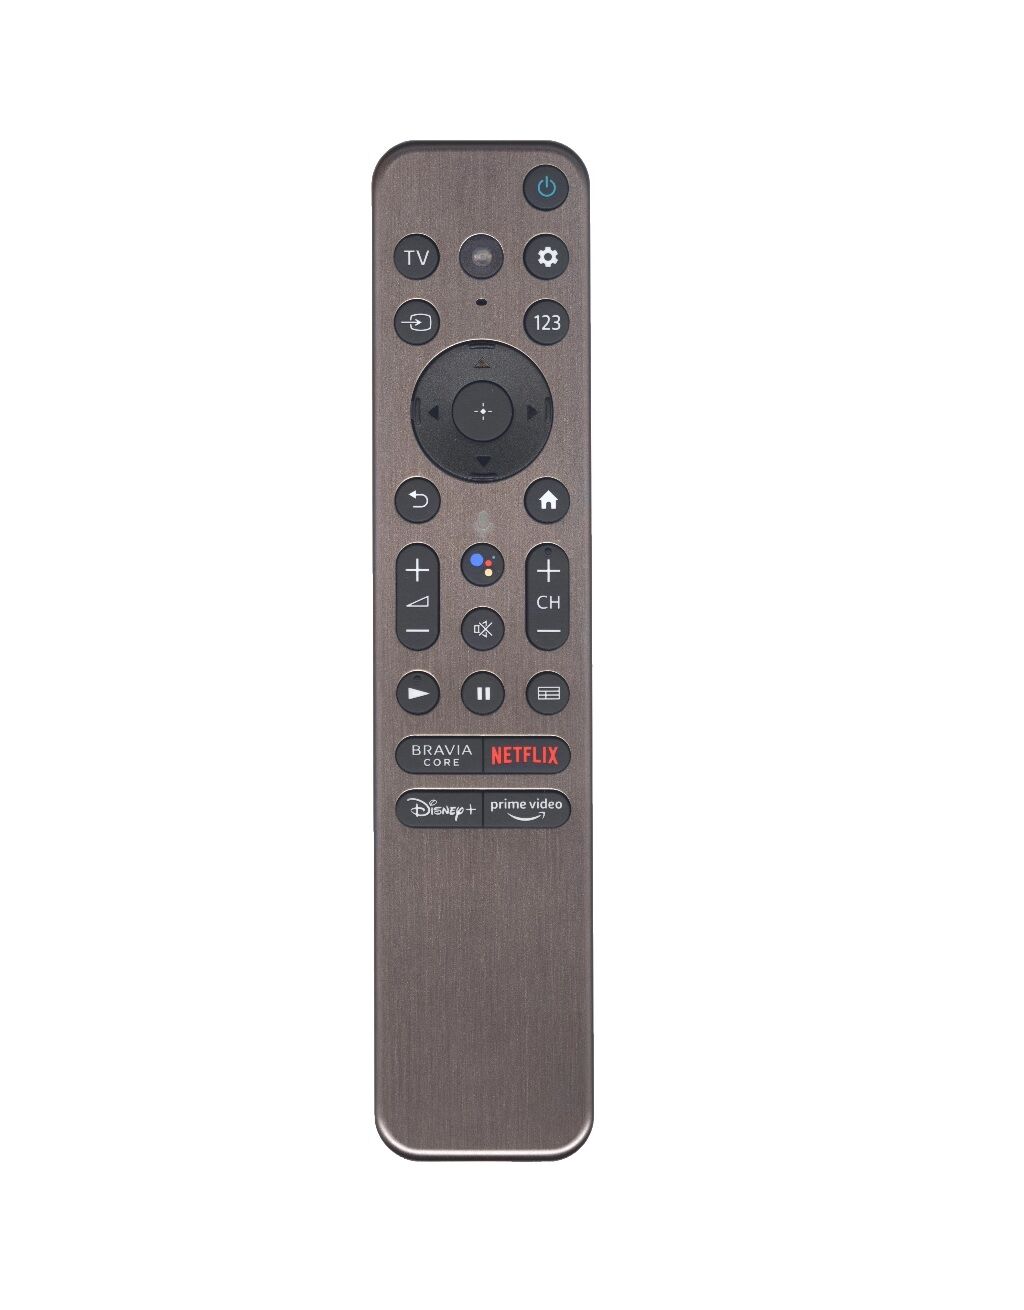 Пульт ДУ RMF-TX900U с голосовым управлением, для телевизора Sony SMART TV Hyayu